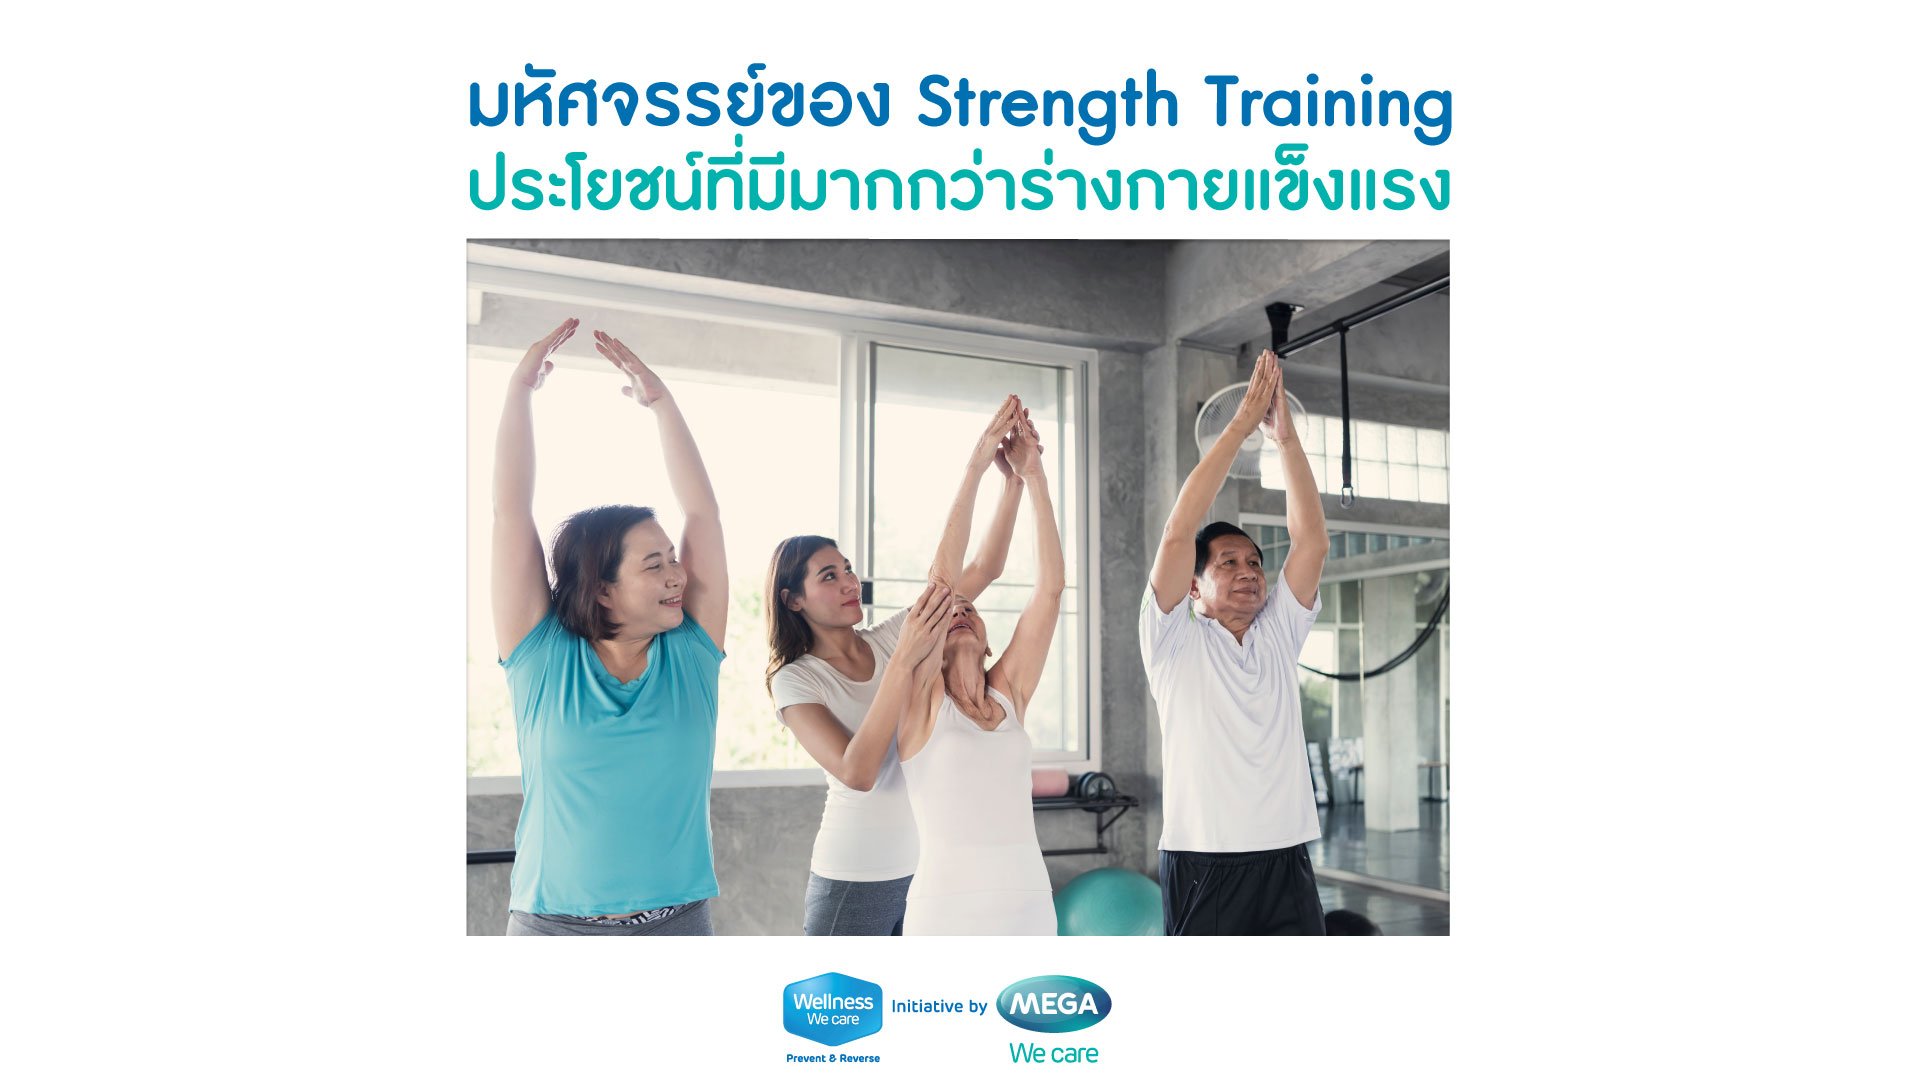 มหัศจรรย์ของ Strength Training ประโยชน์ที่มีมากกว่าร่างกายแข็งแรง